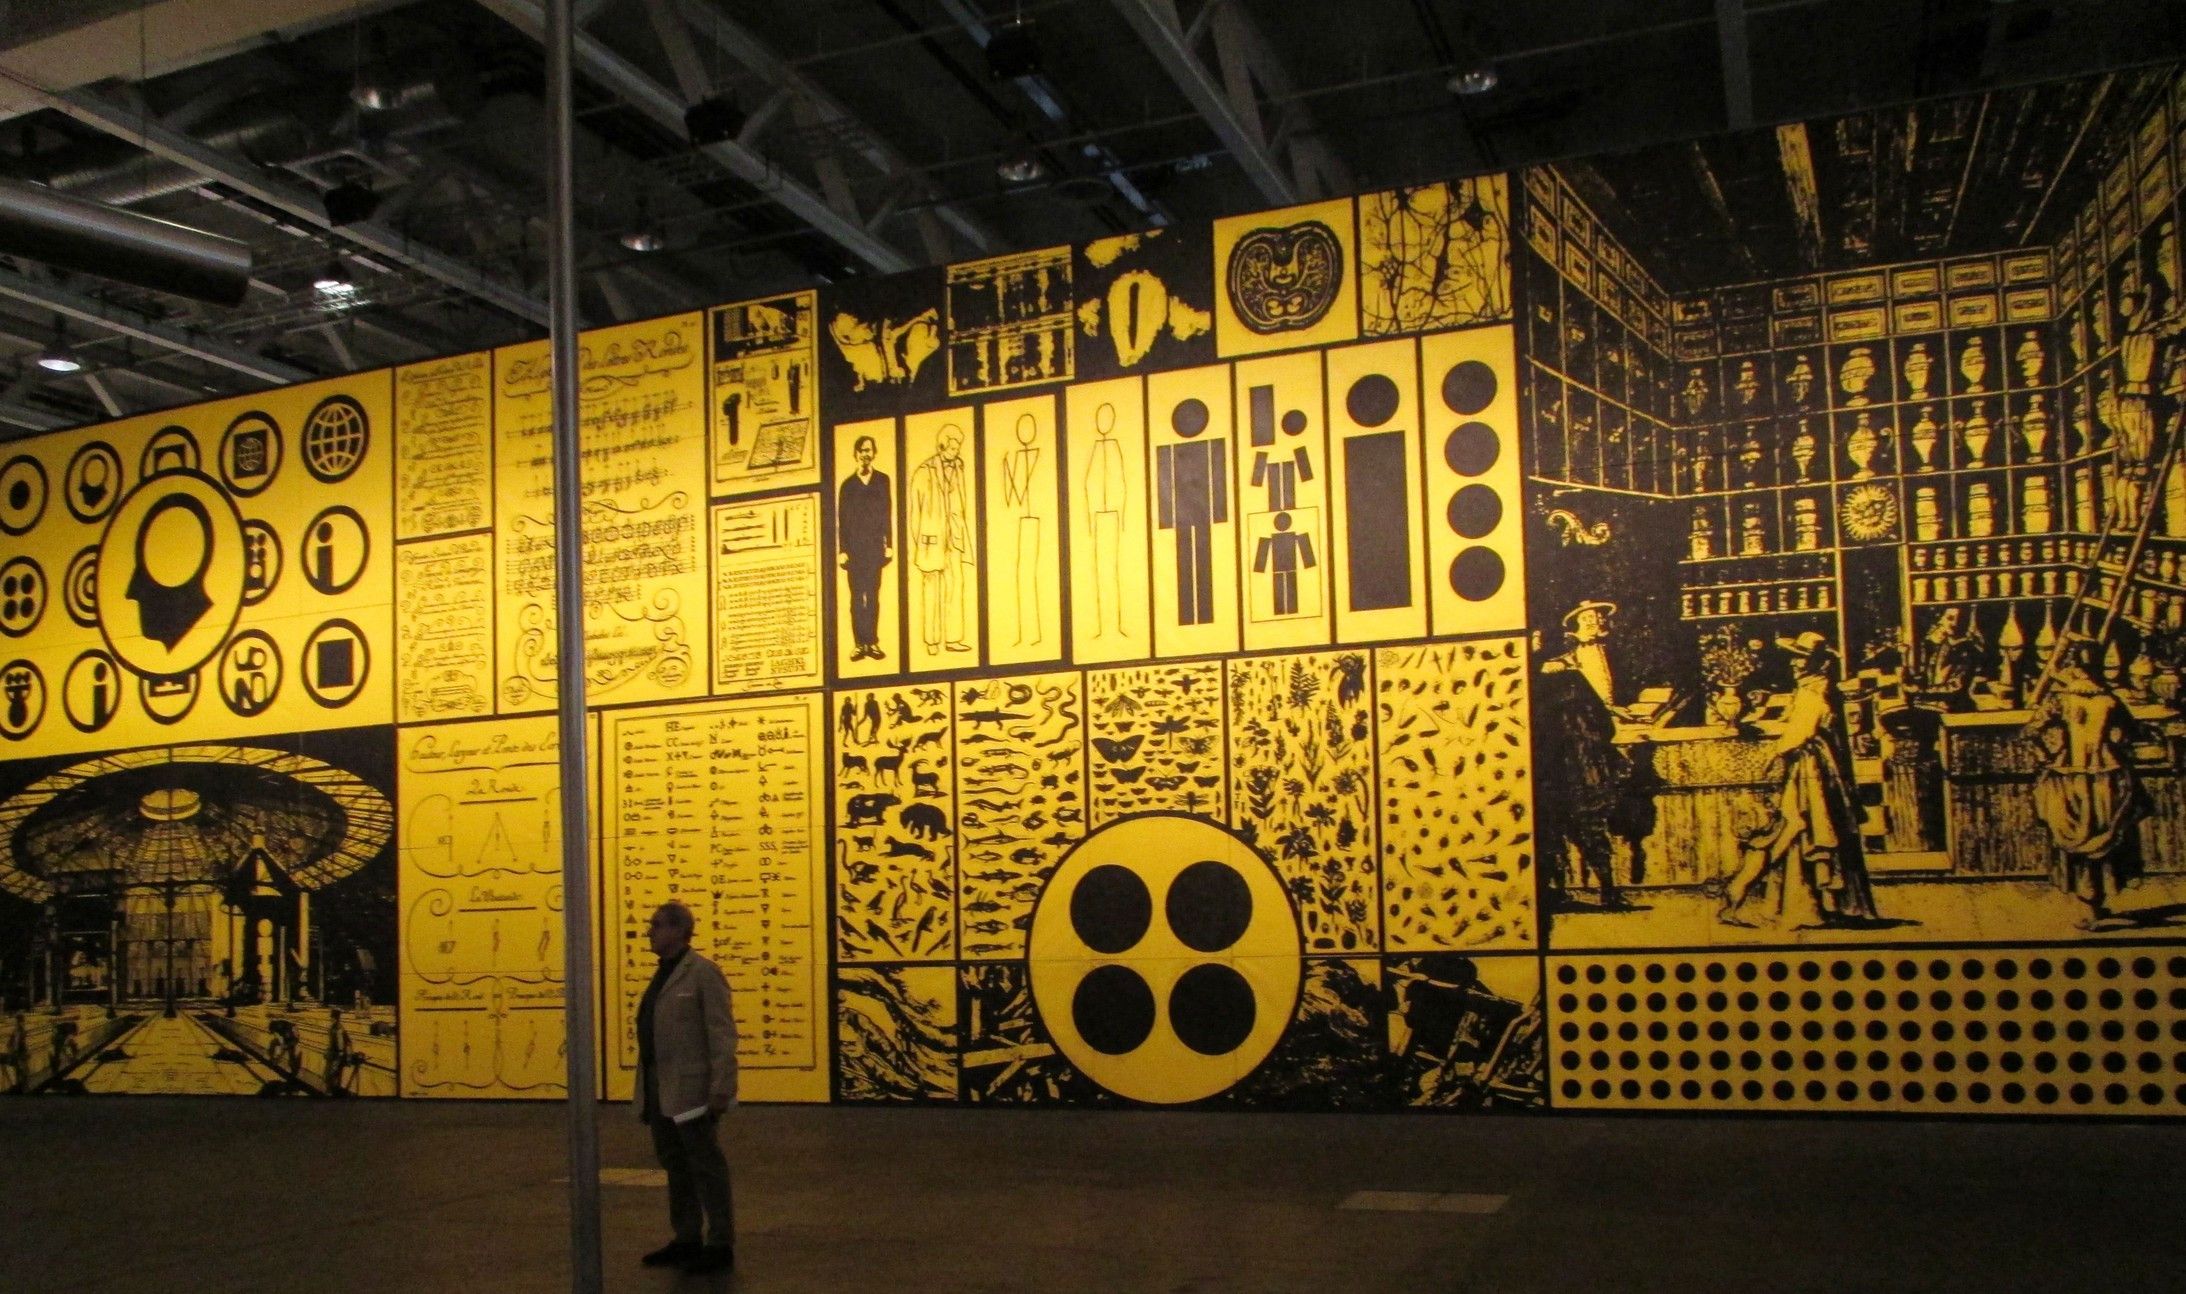 Blick auf das gigantische Gemälde (22 X 7 m) des Amerikaners Matt Mullican. Die in Gelb und Schwarz gehaltene Arbeit (Two into One becomes Three) besteht aus 70 einzelnen Leinwänden. die sich zu einem monumentalen Panorama zusammenfügen.    
(Bild: André Pfenninger)